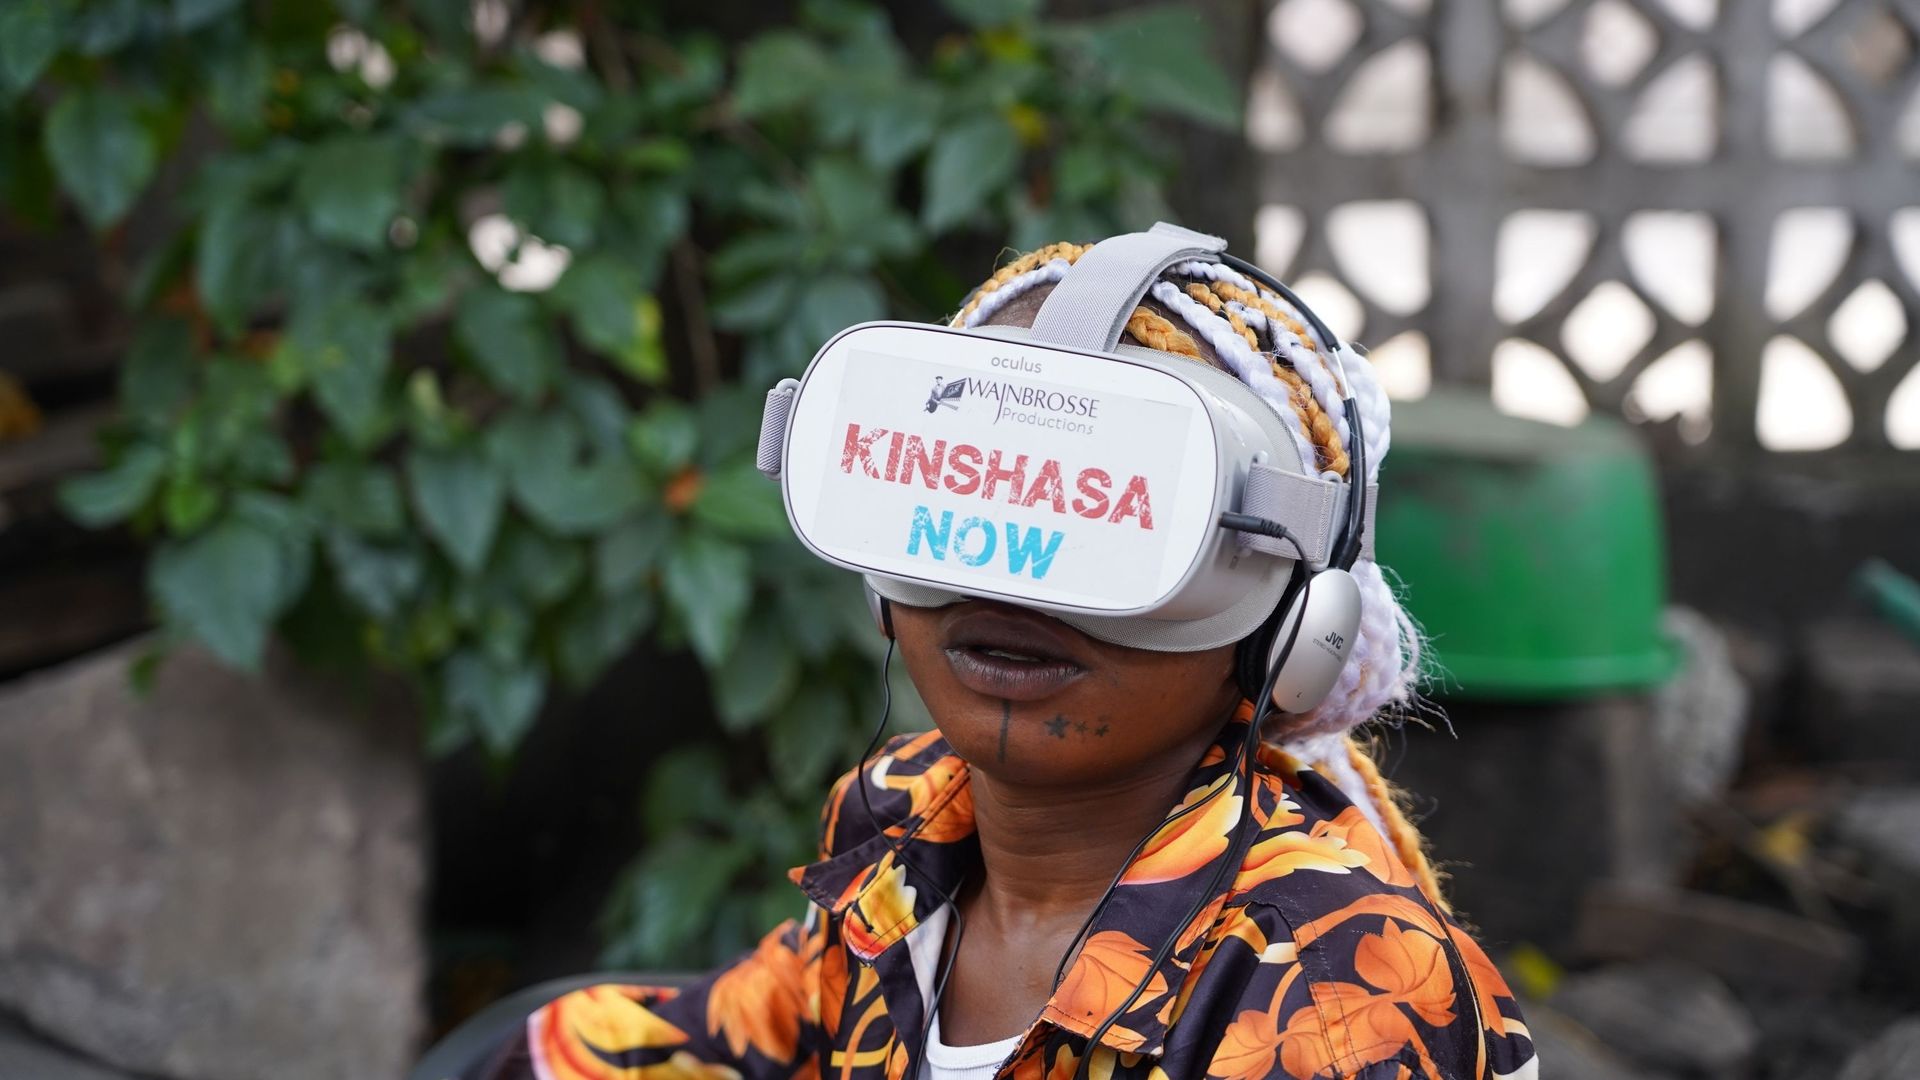 Bozar présente la fiction en réalité virtuelle "Kinshasa Now" du réalisateur belge Marc-Henri Wajnberg, une œuvre qui nous fait découvrir la vie des enfants de la rue de Kinshasa.